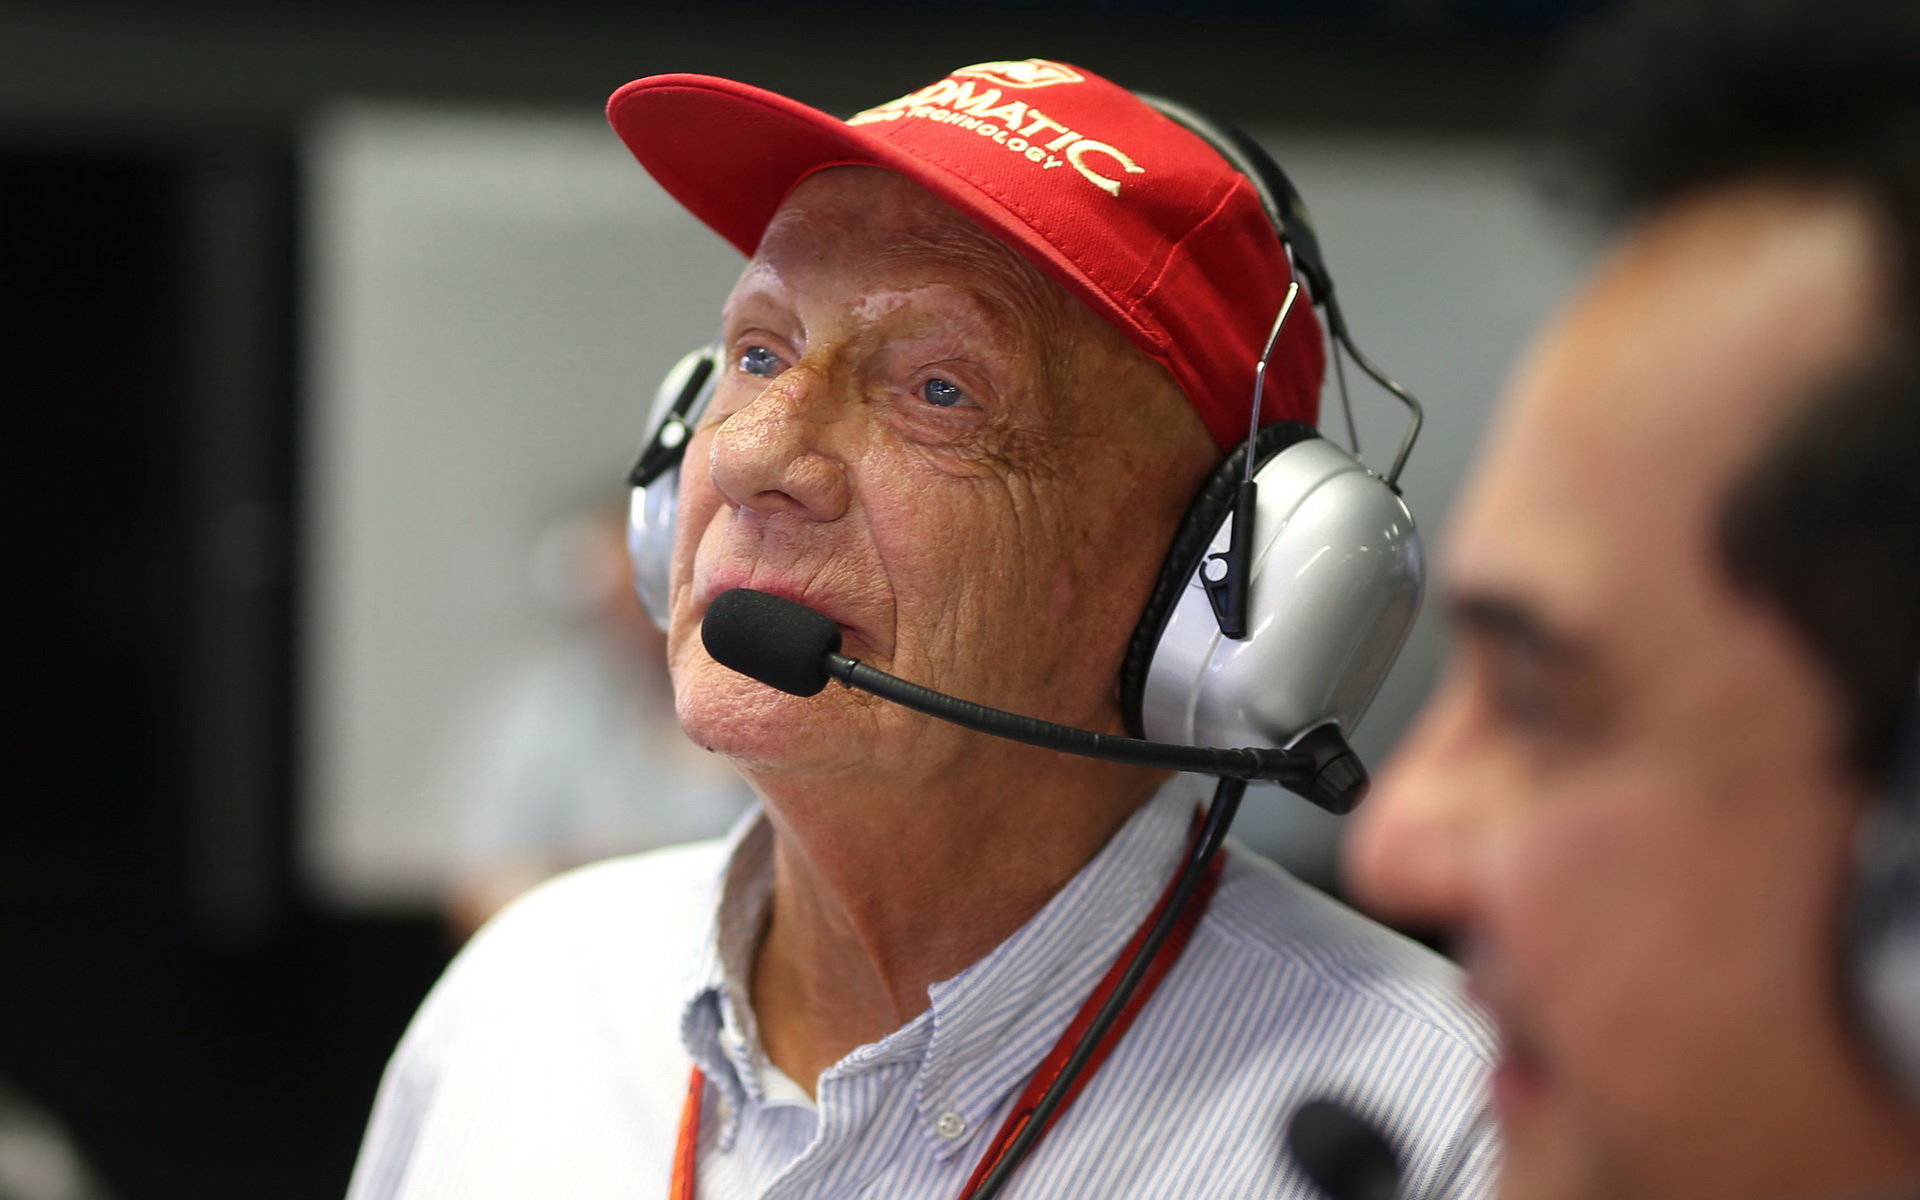 Niki Lauda neváhal jasně okomentovat Lewisovo stěžování